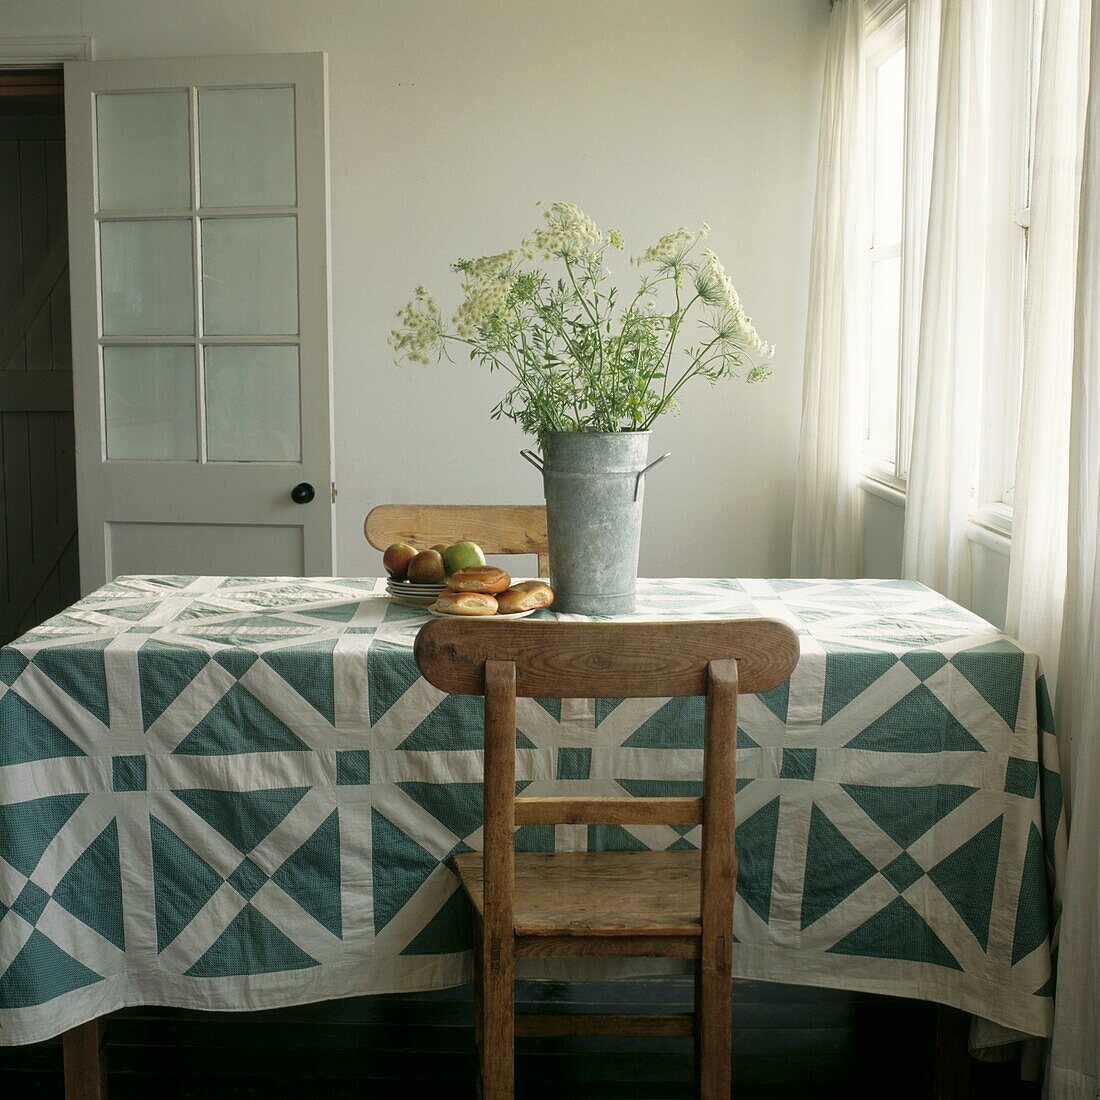 Englischer 'Green and White Maze'-Quilt aus den 1860er Jahren auf einem Esstisch in einer Landhausküche